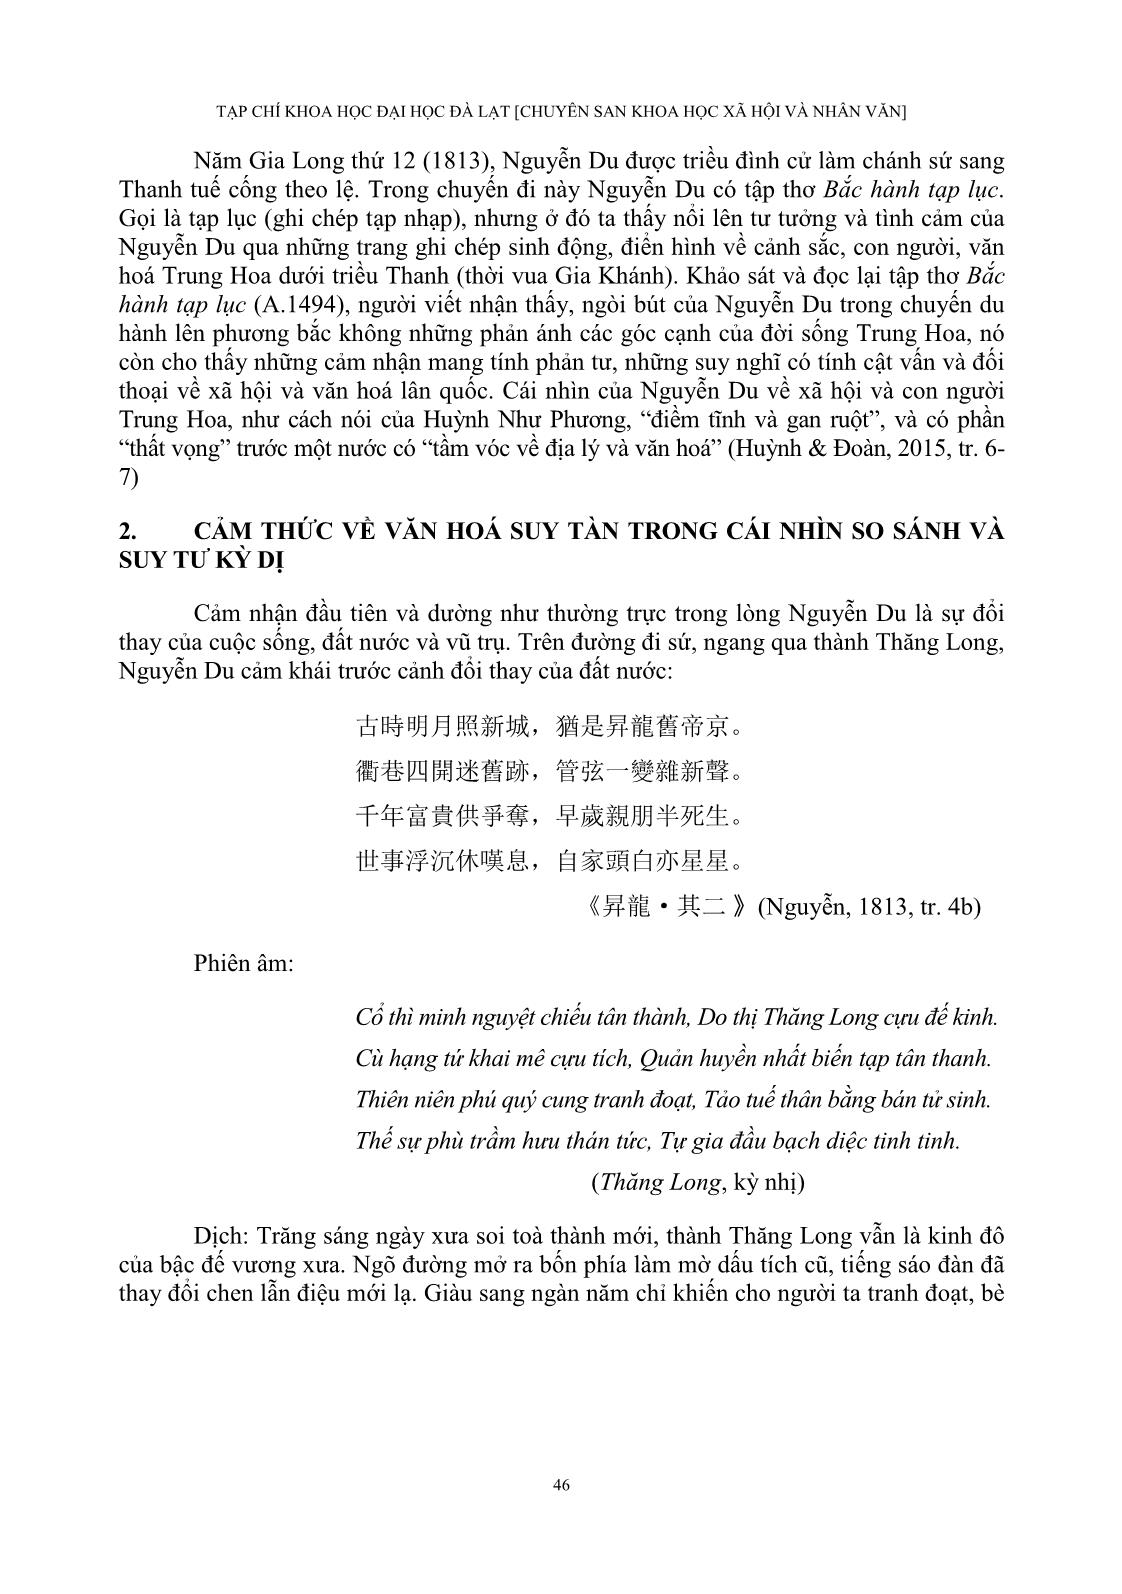 Cảm thức của Nguyễn Du về Trung Quốc Thanh triều trong “Bắc hành tạp lục” trang 4